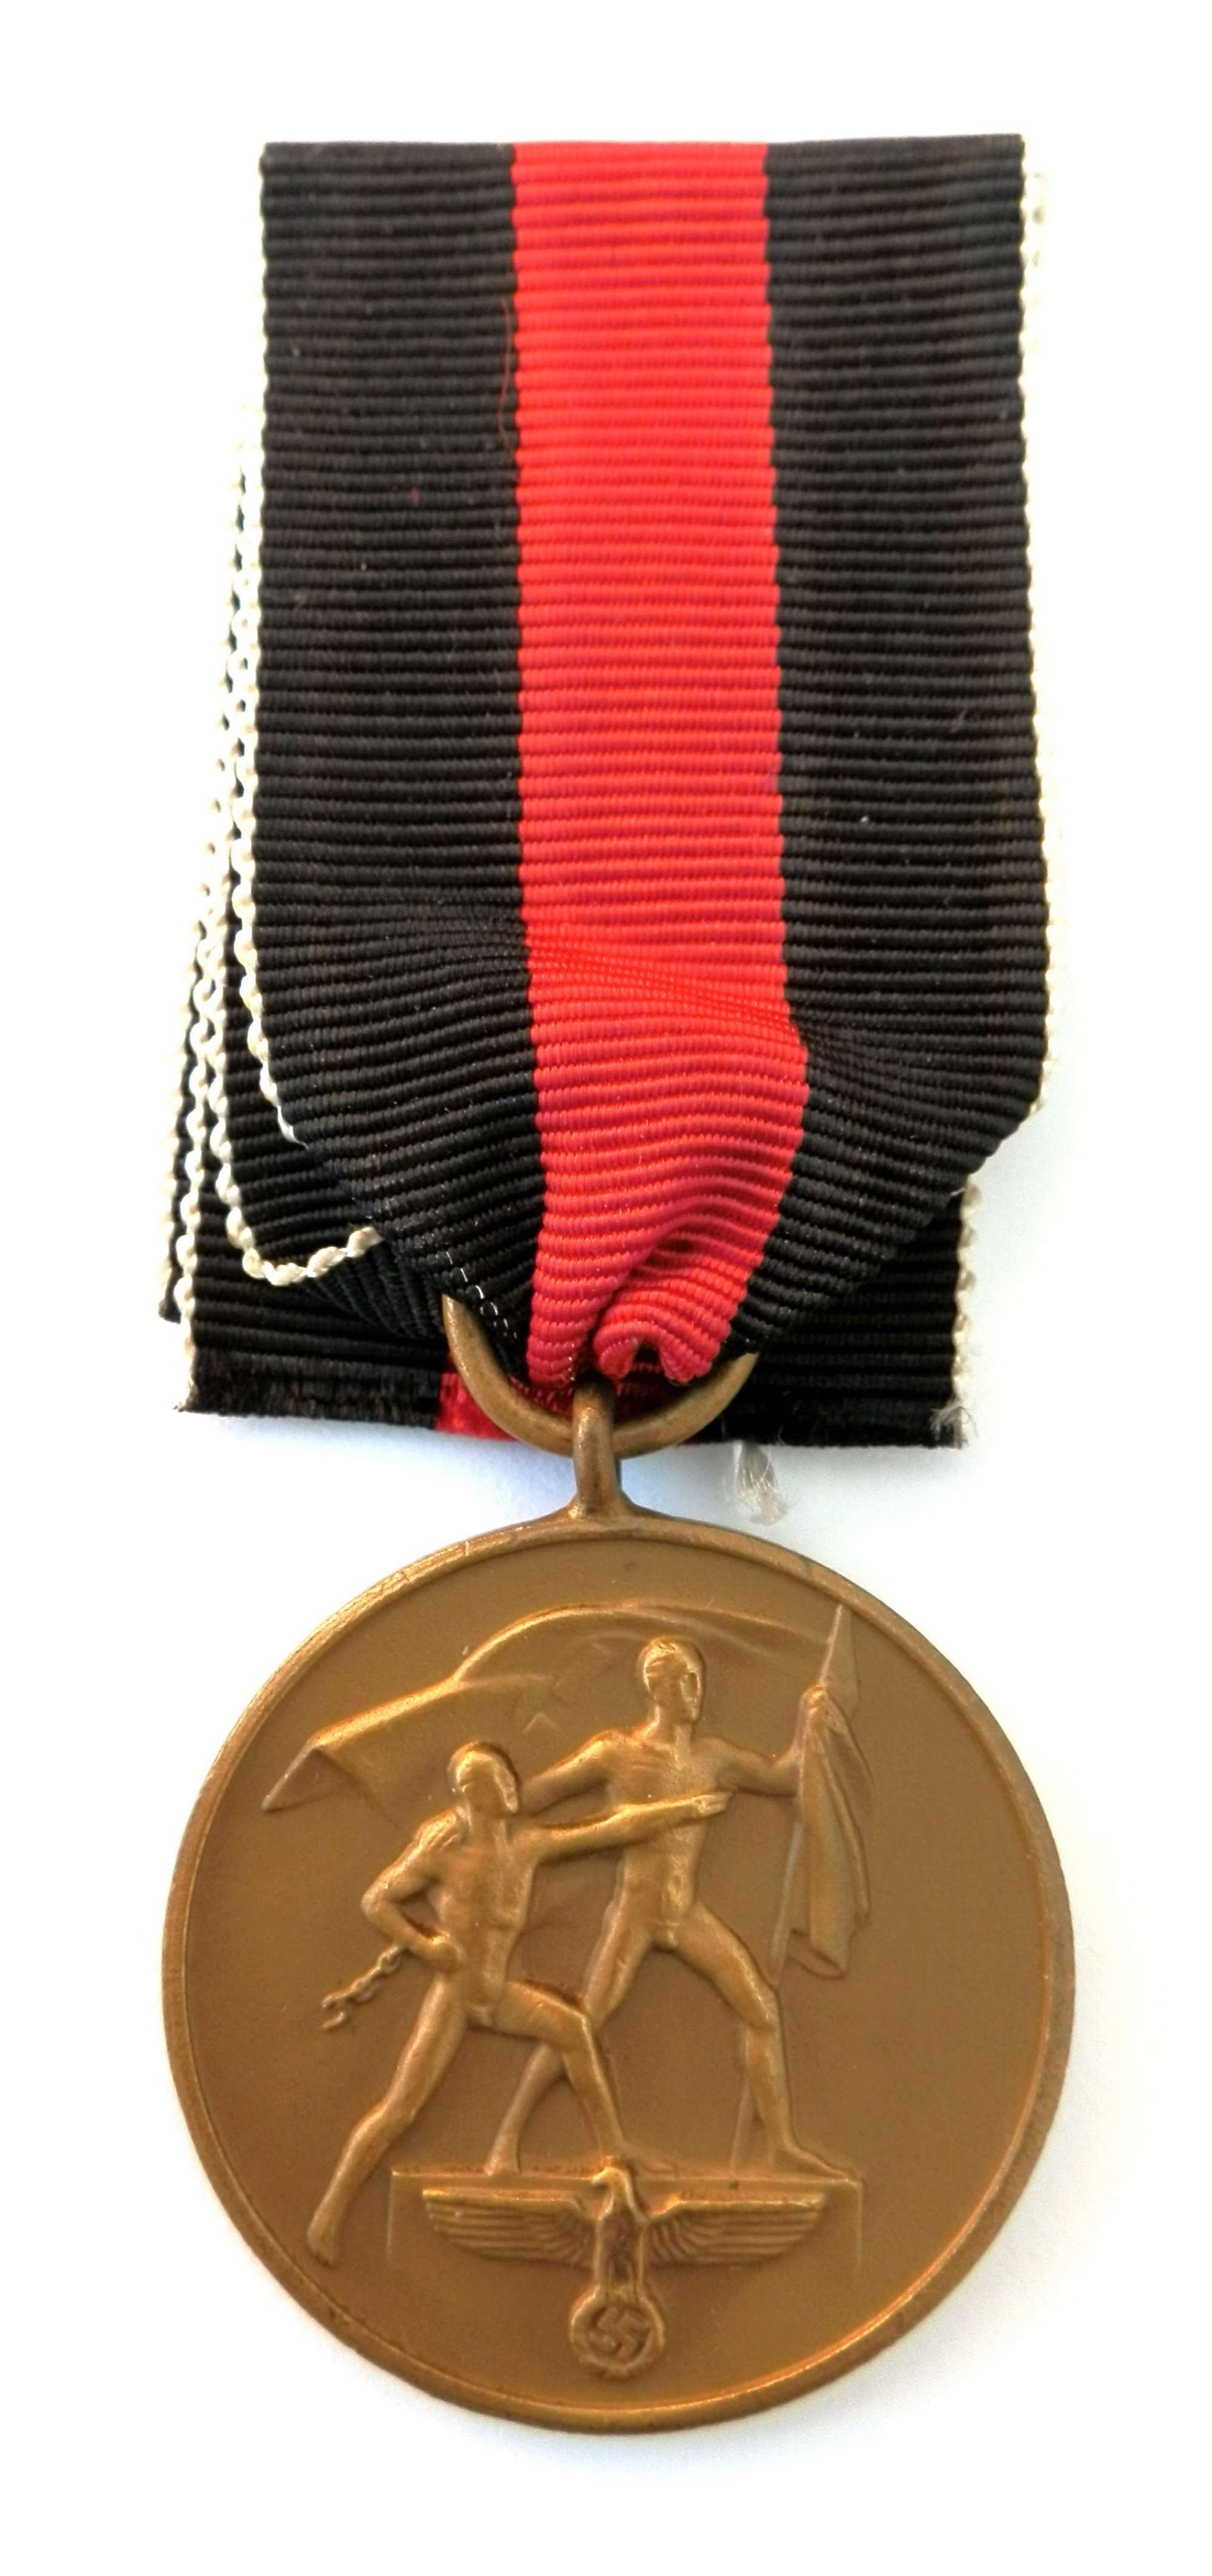 Anschluss German Czech 1st Oktober 1938 Medal